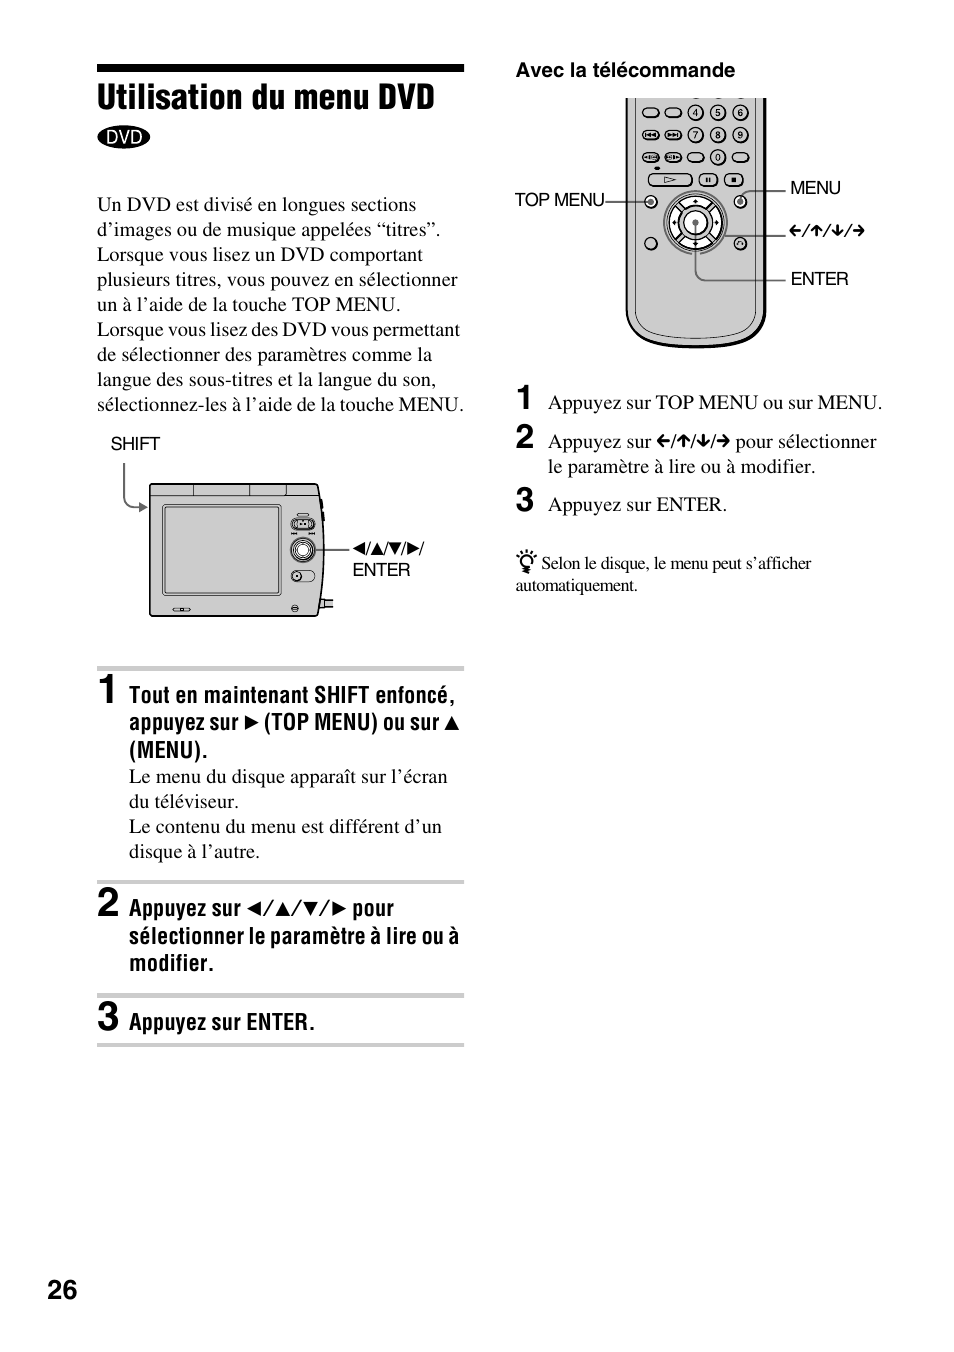 Utilisation du menu dvd, R) (26) | Sony D-VM1 Manuel d'utilisation | Page 26 / 80